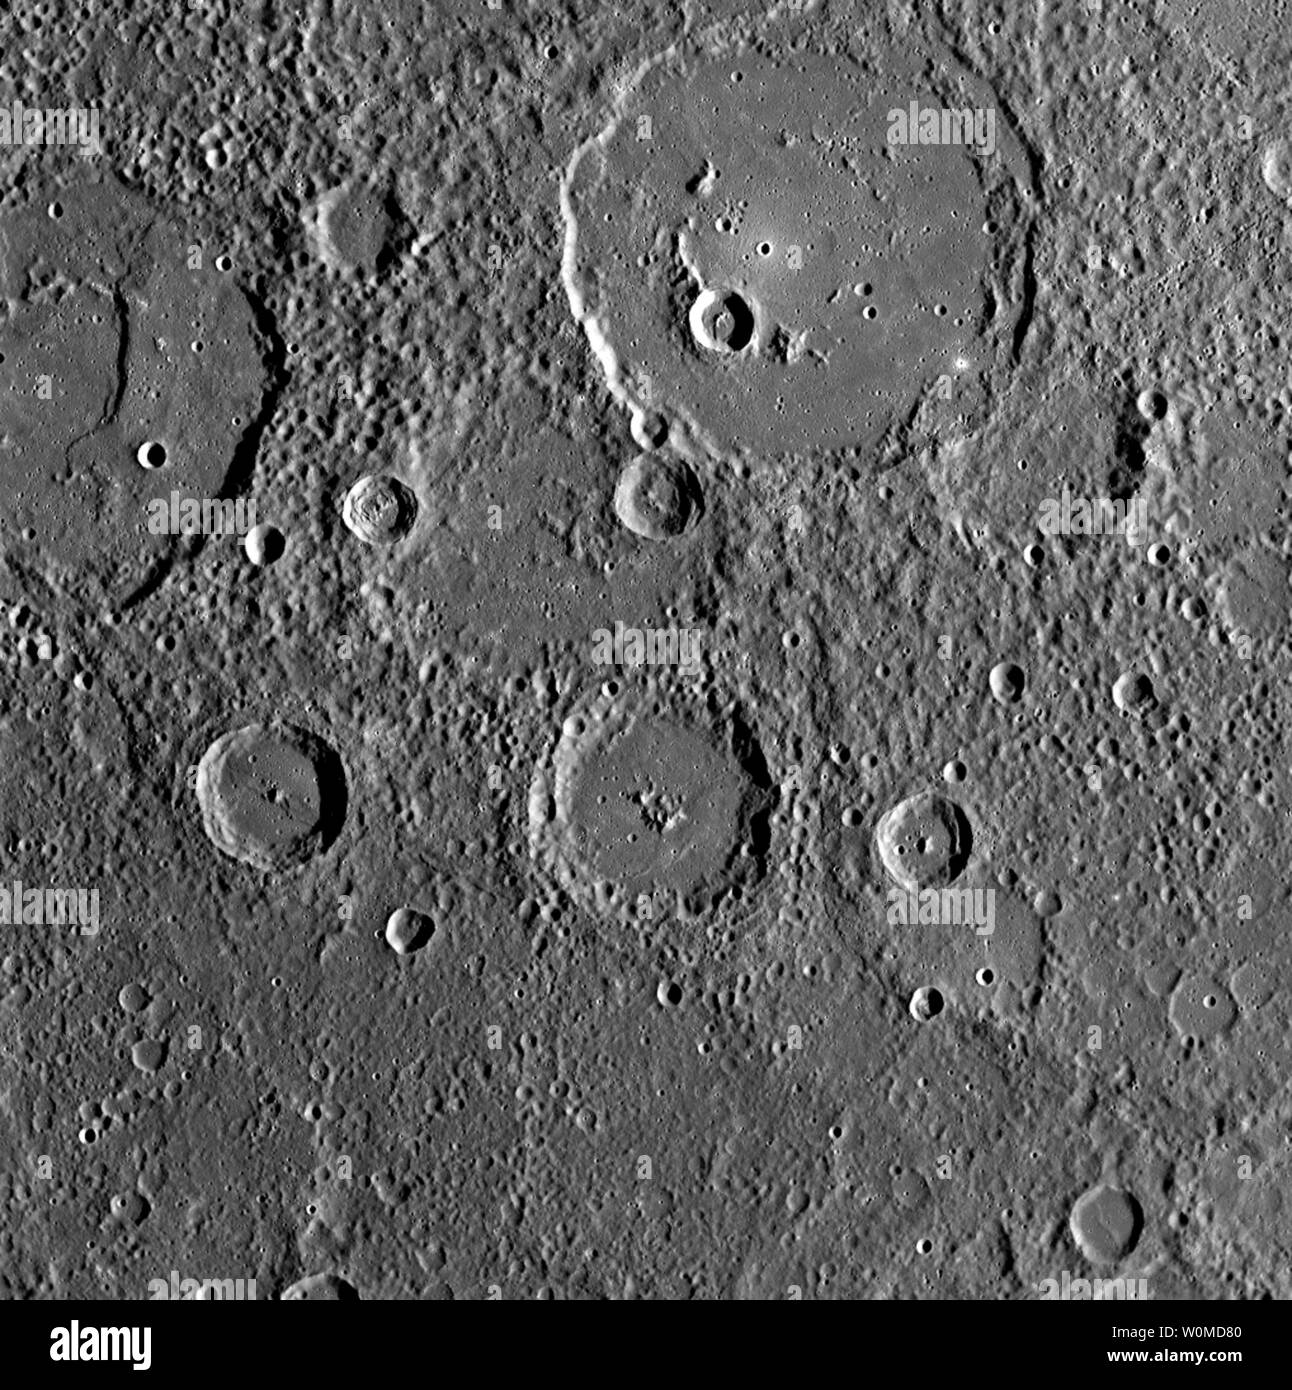 La planète Mercure est représentée le 6 octobre 2008. La sonde de la NASA MESSENGER capturé les images haute résolution qu'il a achevé avec succès son deuxième survol de mercure. (Photo d'UPI/NASA/Johns Hopkins University Applied Physics Laboratory/Carnegie Institution of Washington) Banque D'Images